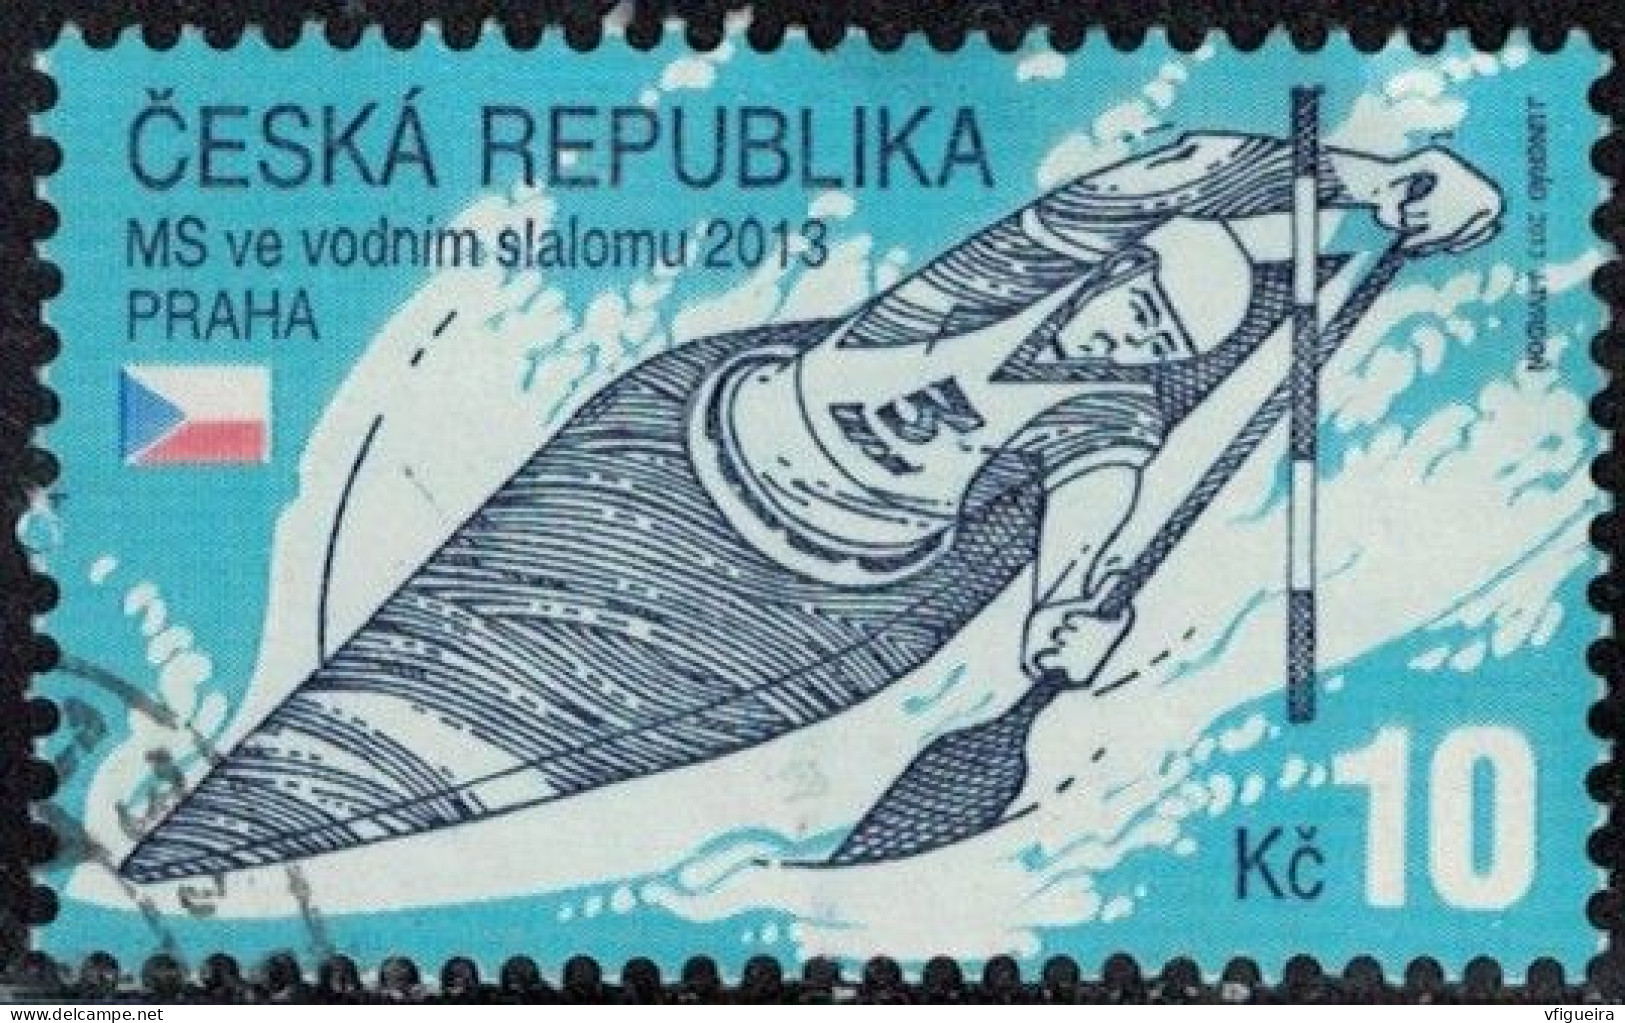 République Tchèque 2013 Oblitéré Used Championnats Du Monde De Slalom De Kayak Y&T CZ 686 SU - Used Stamps